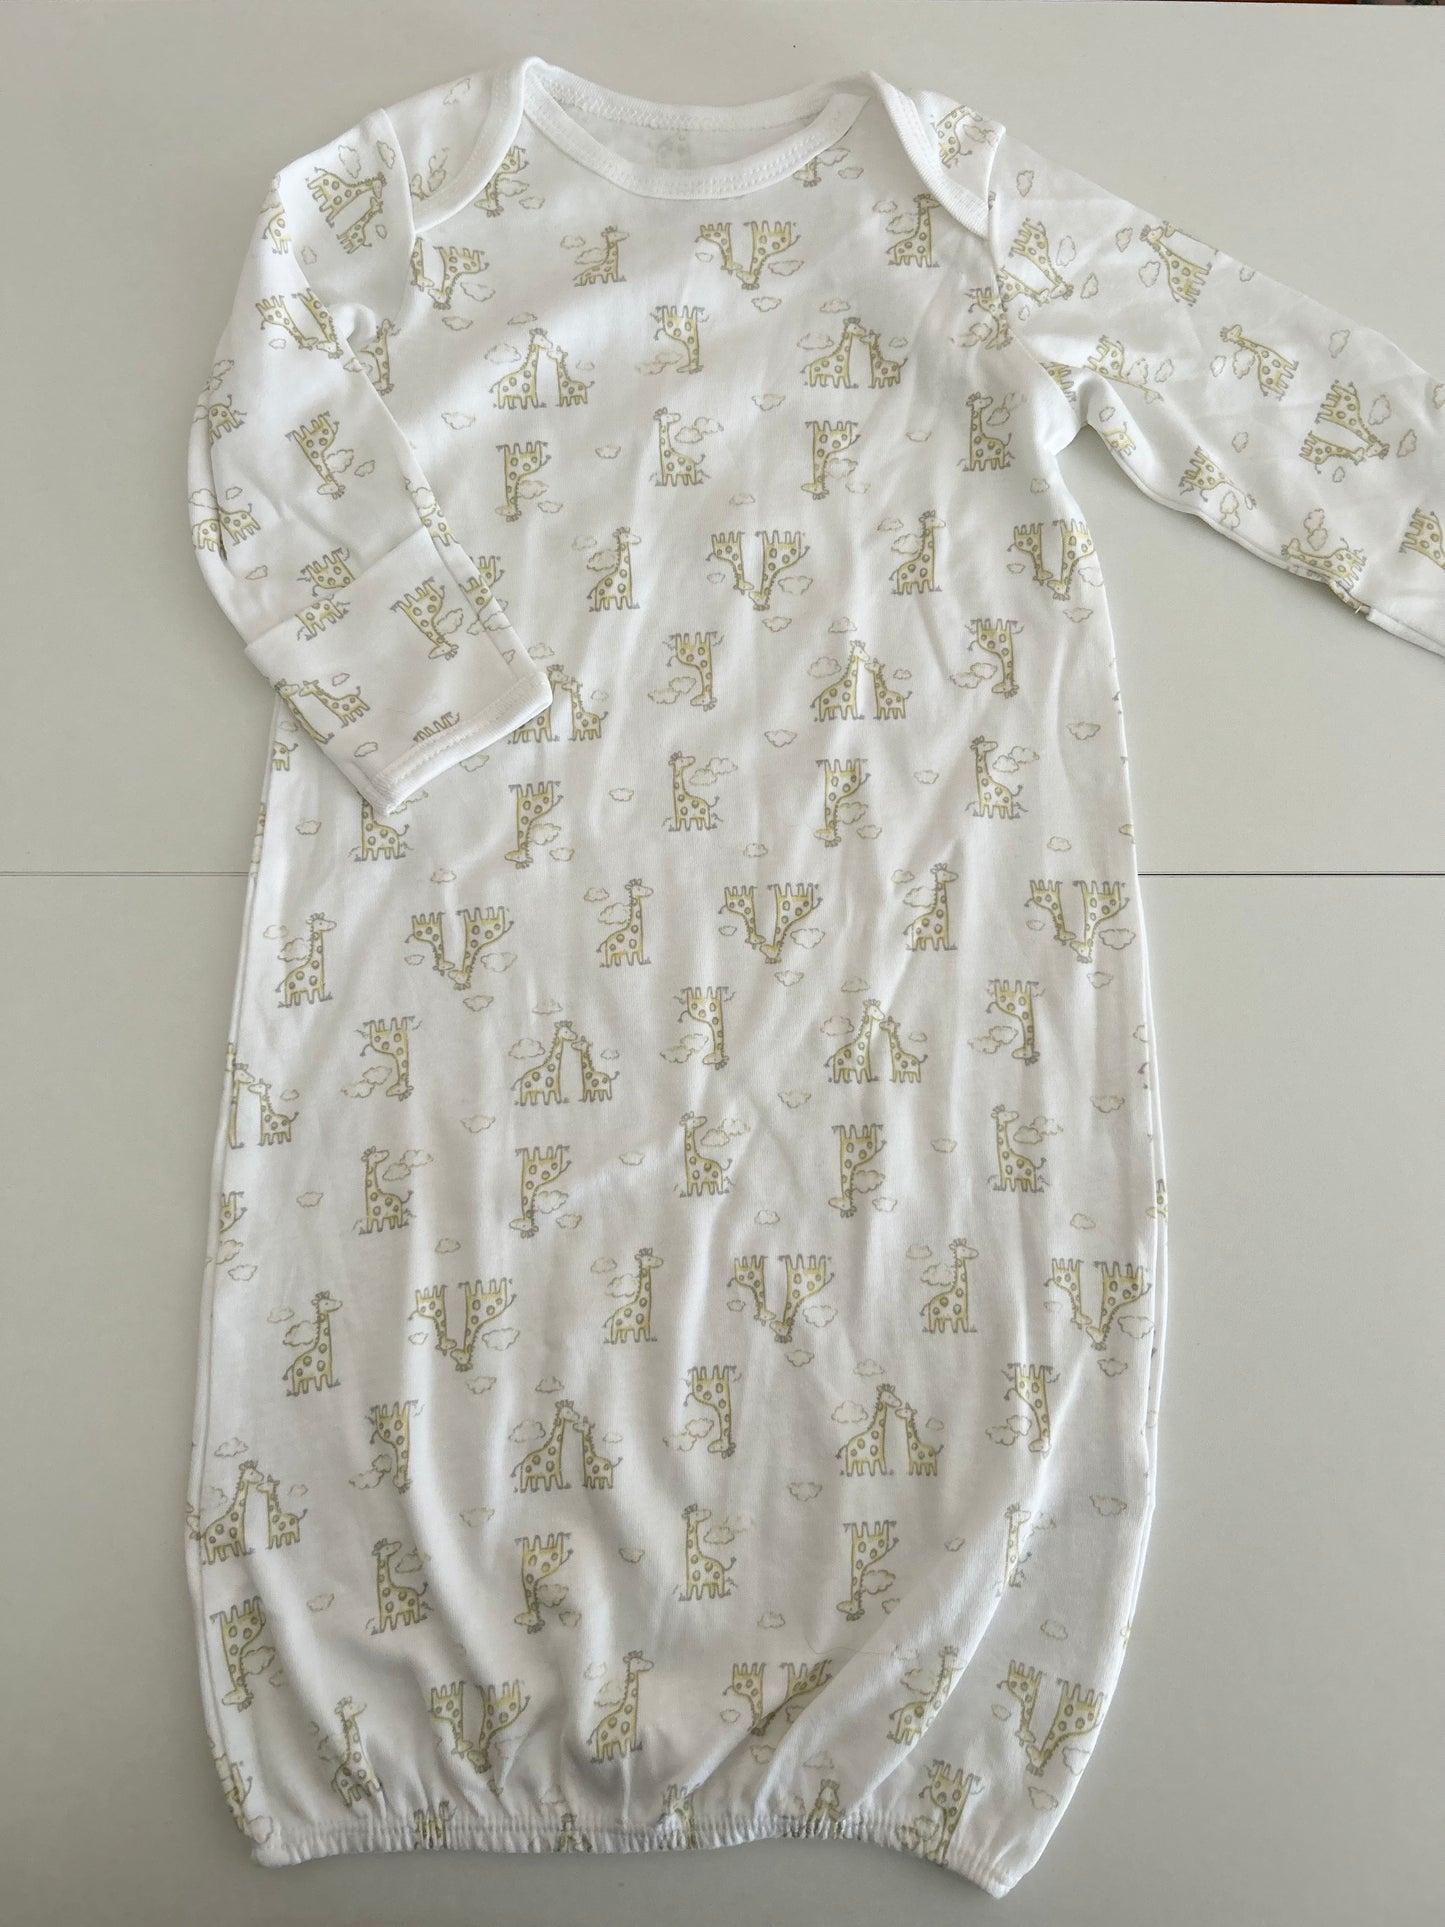 Little Me | Sleeper Gown Bundle | Gender Neutral | White | 0-3 monthsLittle Me | Sleeper Gown Bundle | Gender Neutral | White | 0-3 months